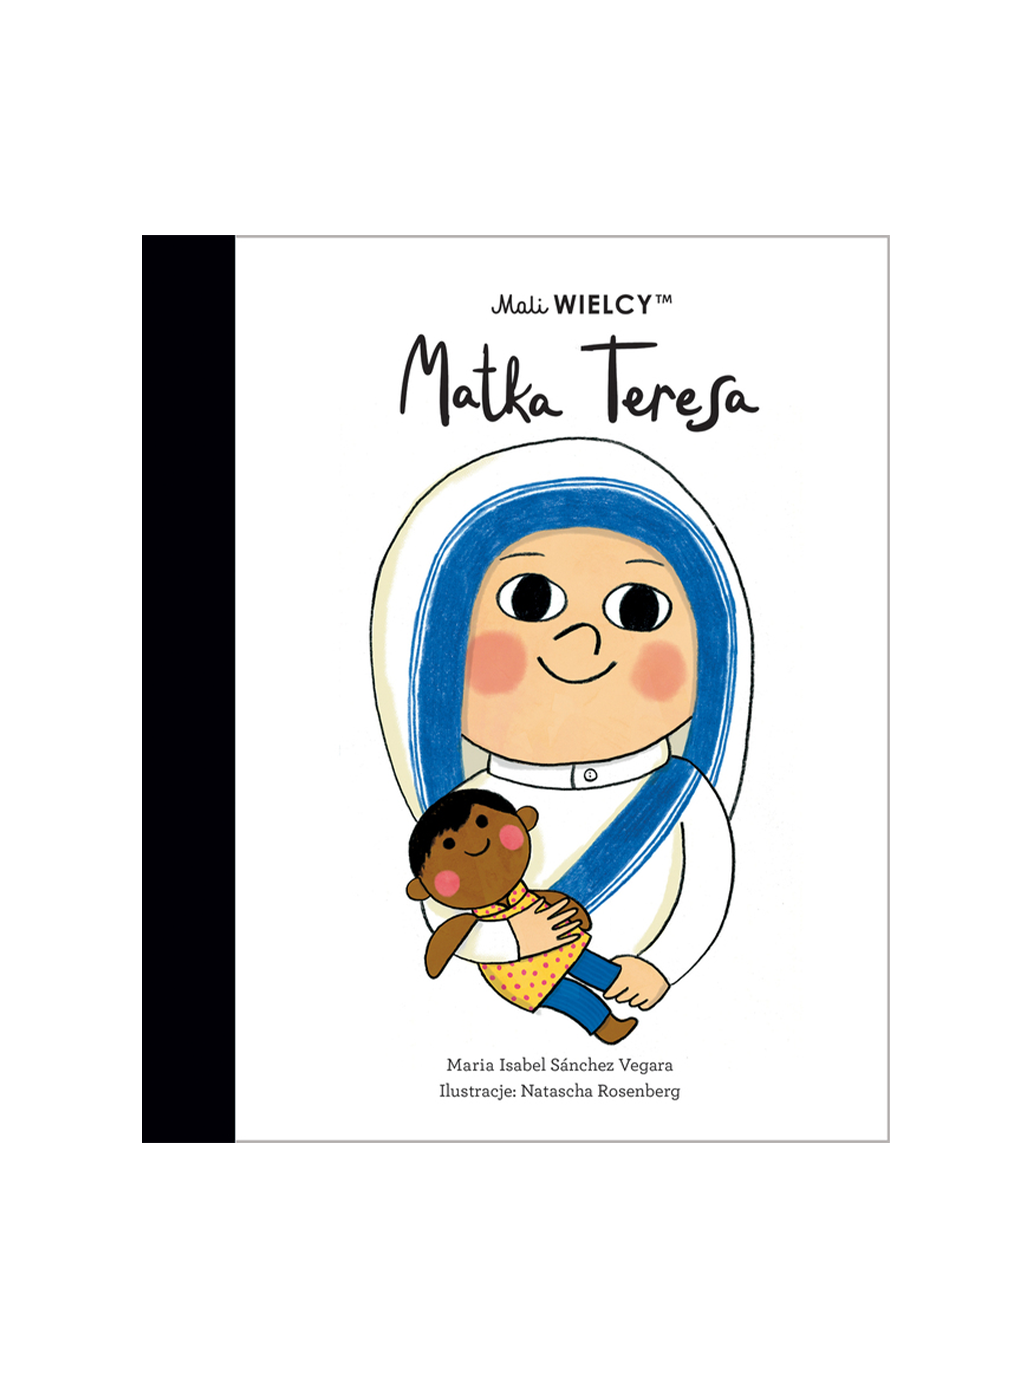 Mali Wielcy, Matka Teresa